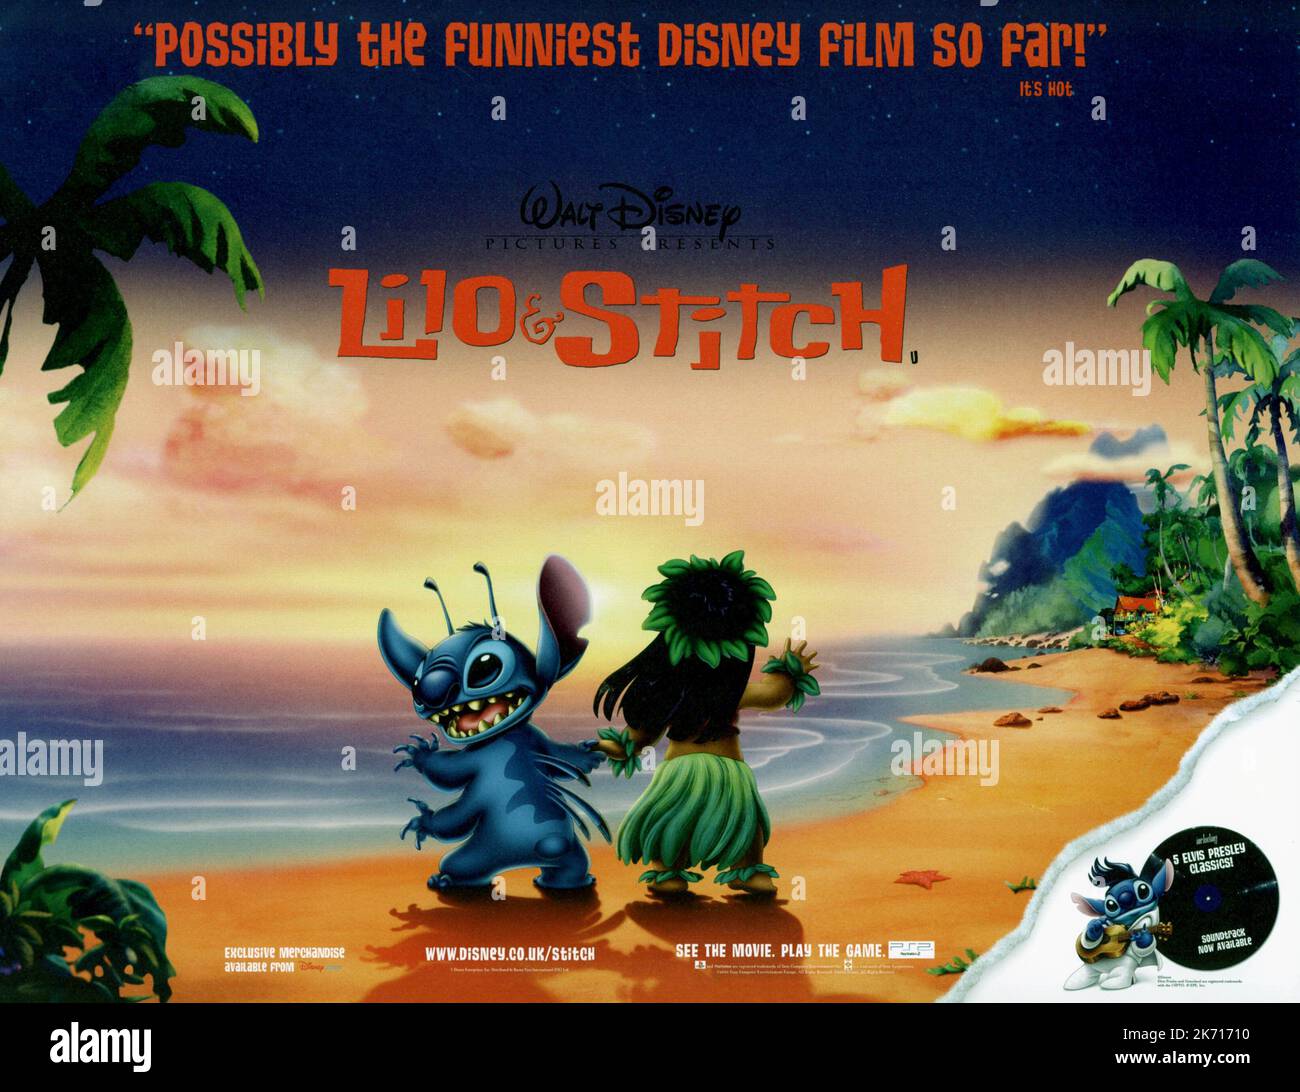 Stitch! The Movie, Movie fanart